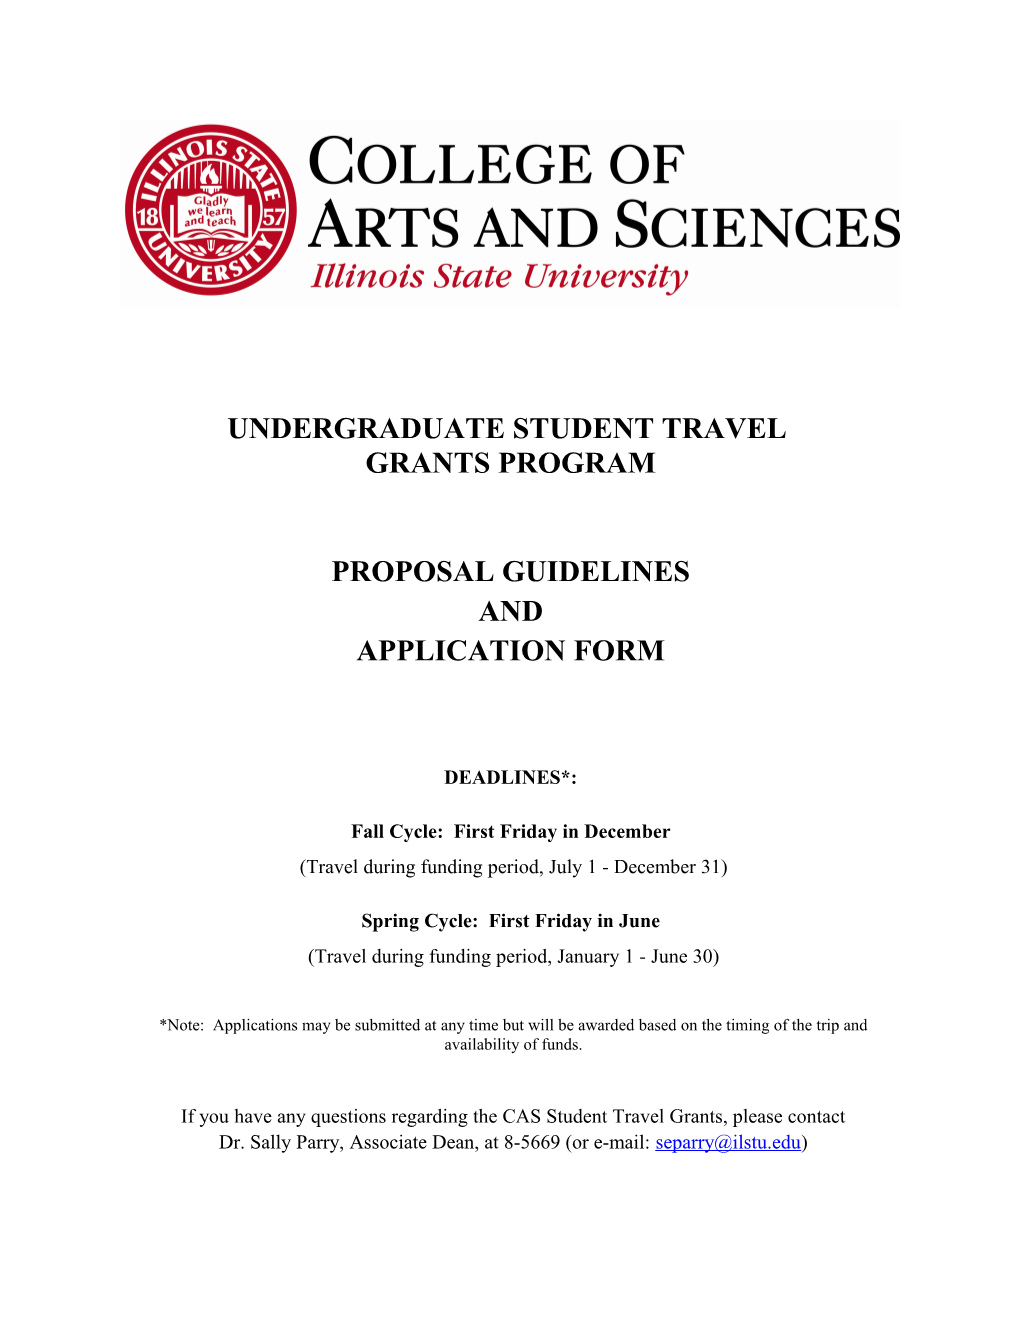 Undergraduate Student Travel